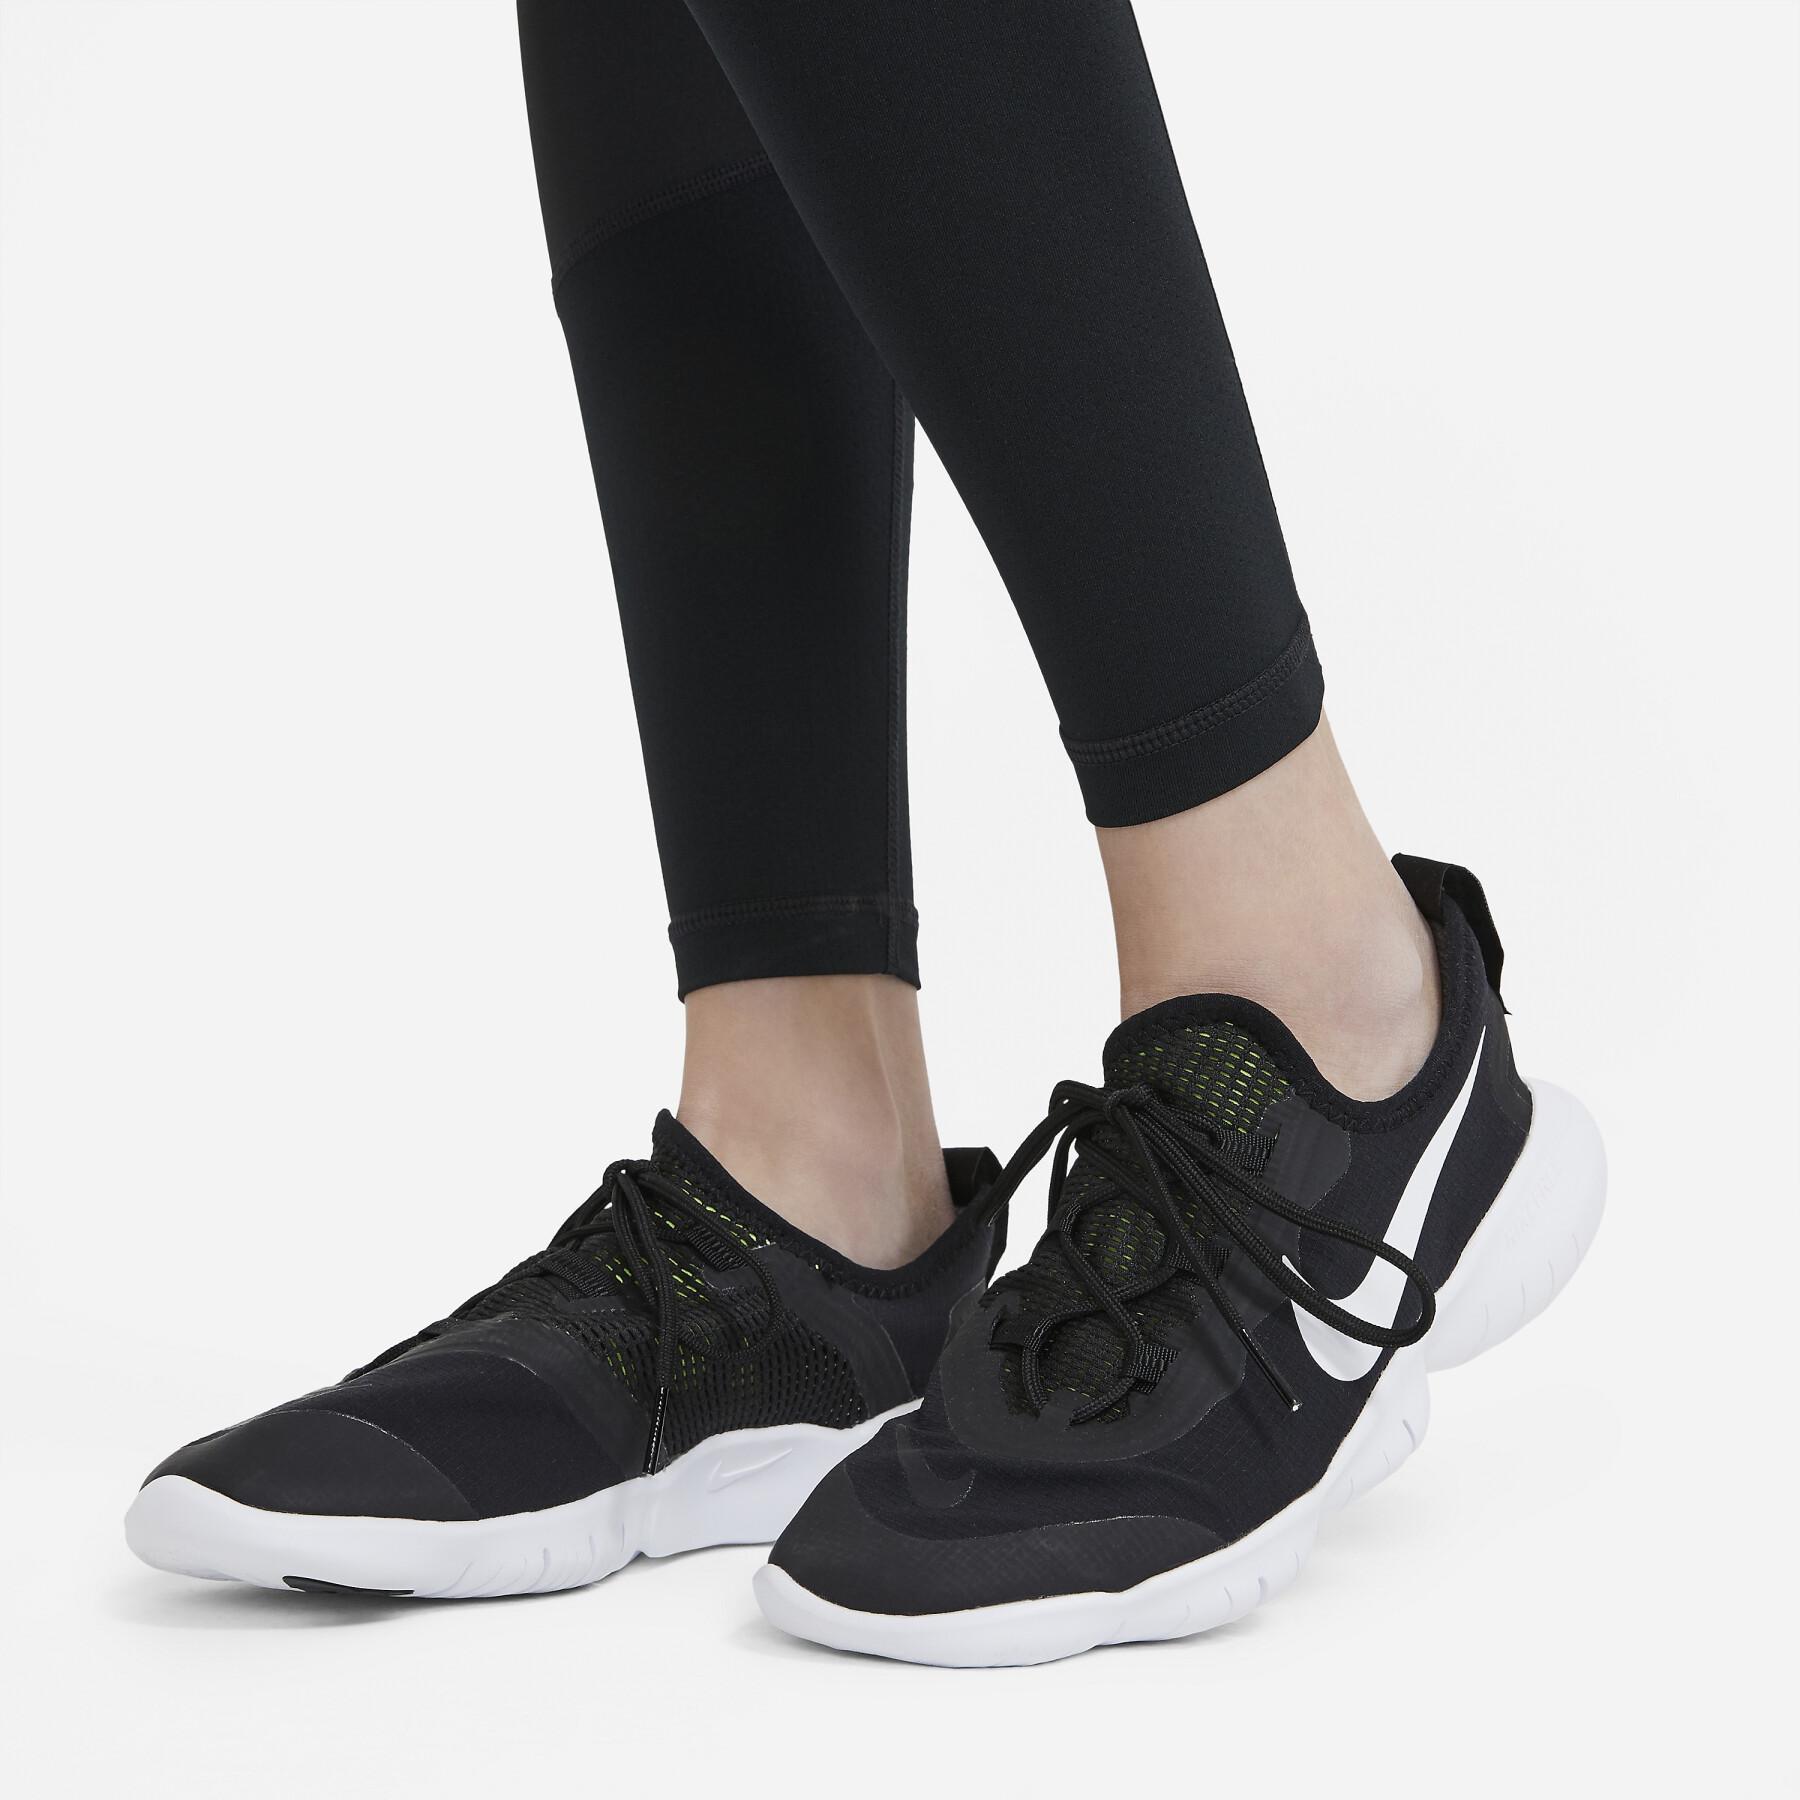 Legging girl Nike Pro